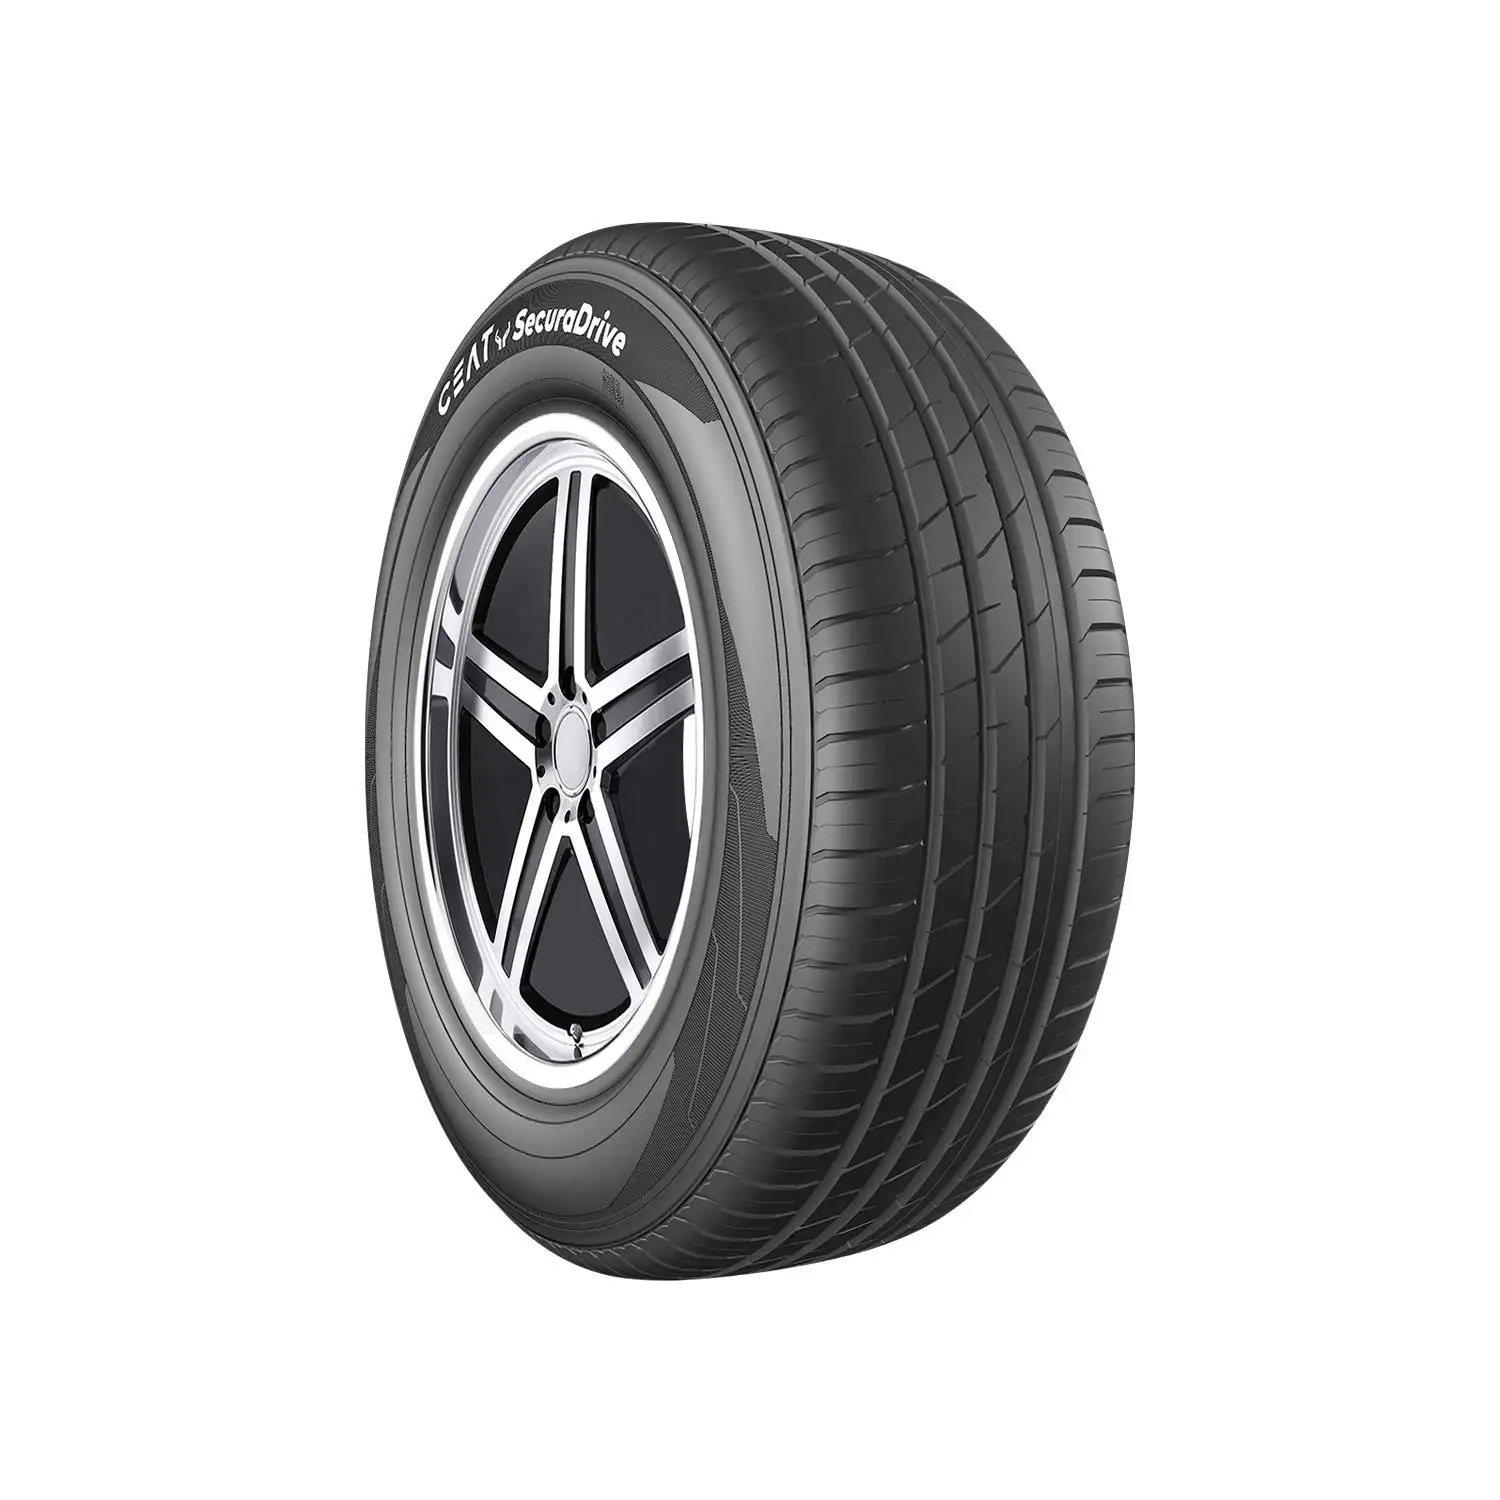 Compre neumáticos de automóviles usados a granel neumáticos de pasajeros usados/neumáticos de camiones japoneses y alemanes usados a la venta/neumáticos de exportación y al por mayor